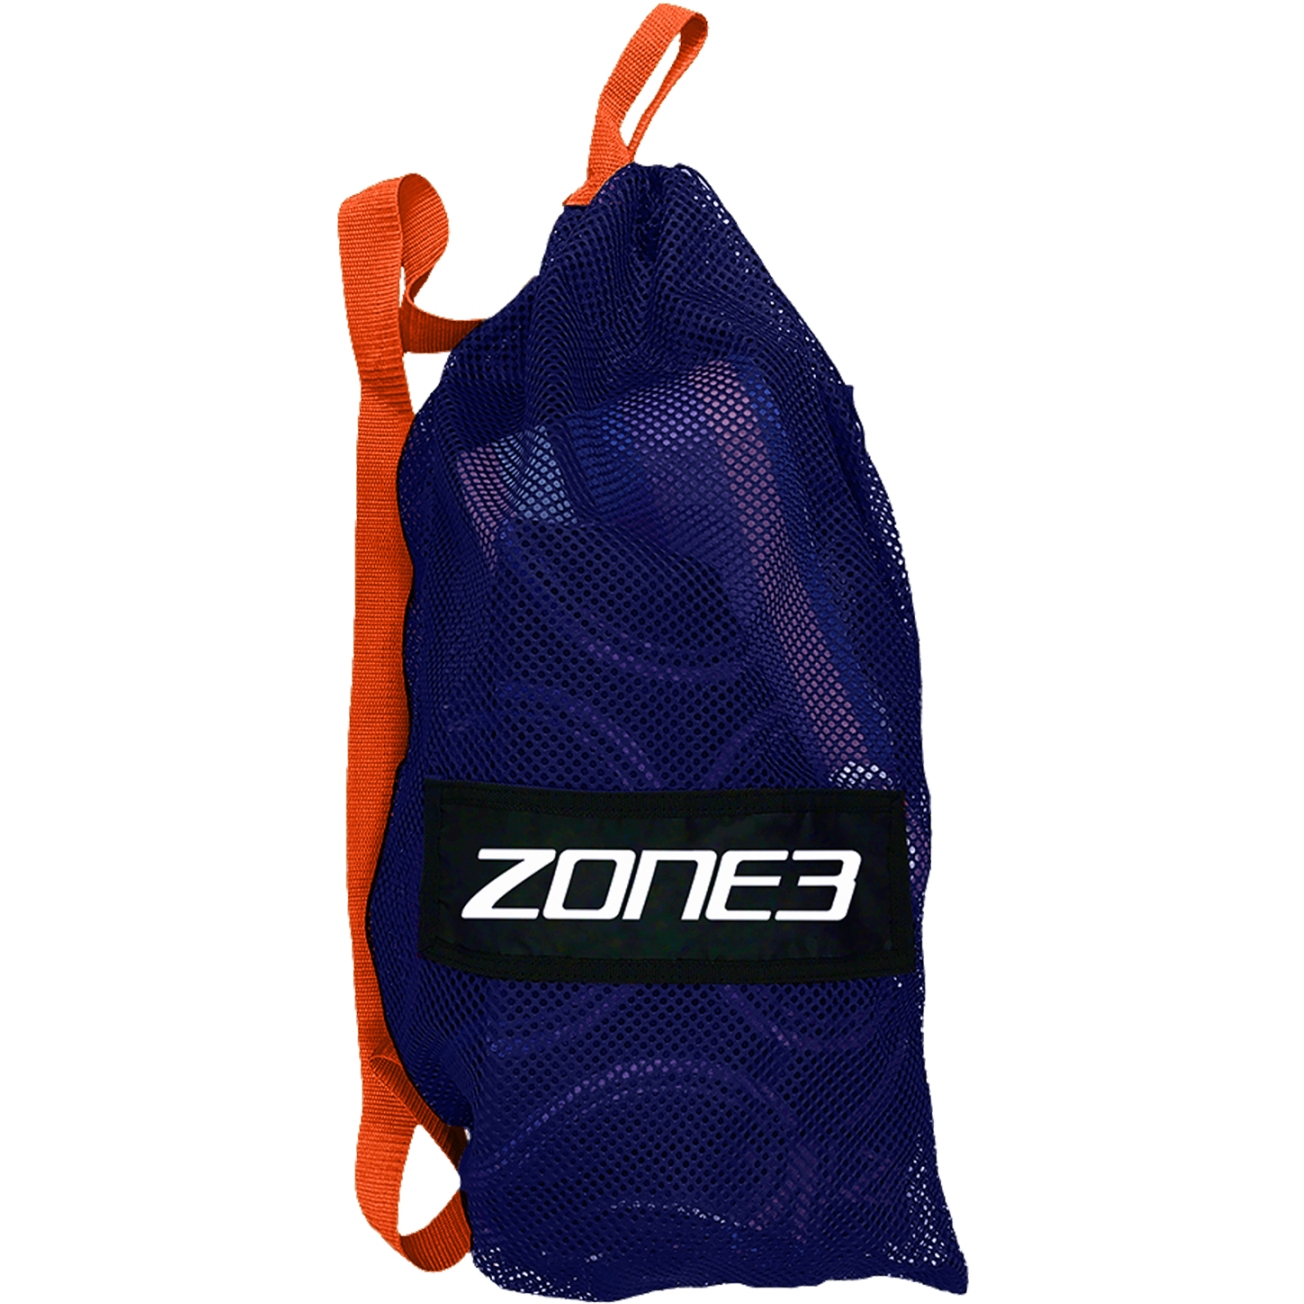 Immagine prodotto da Zone3 Borsa de Deporte - Small Mesh - blu/arancione